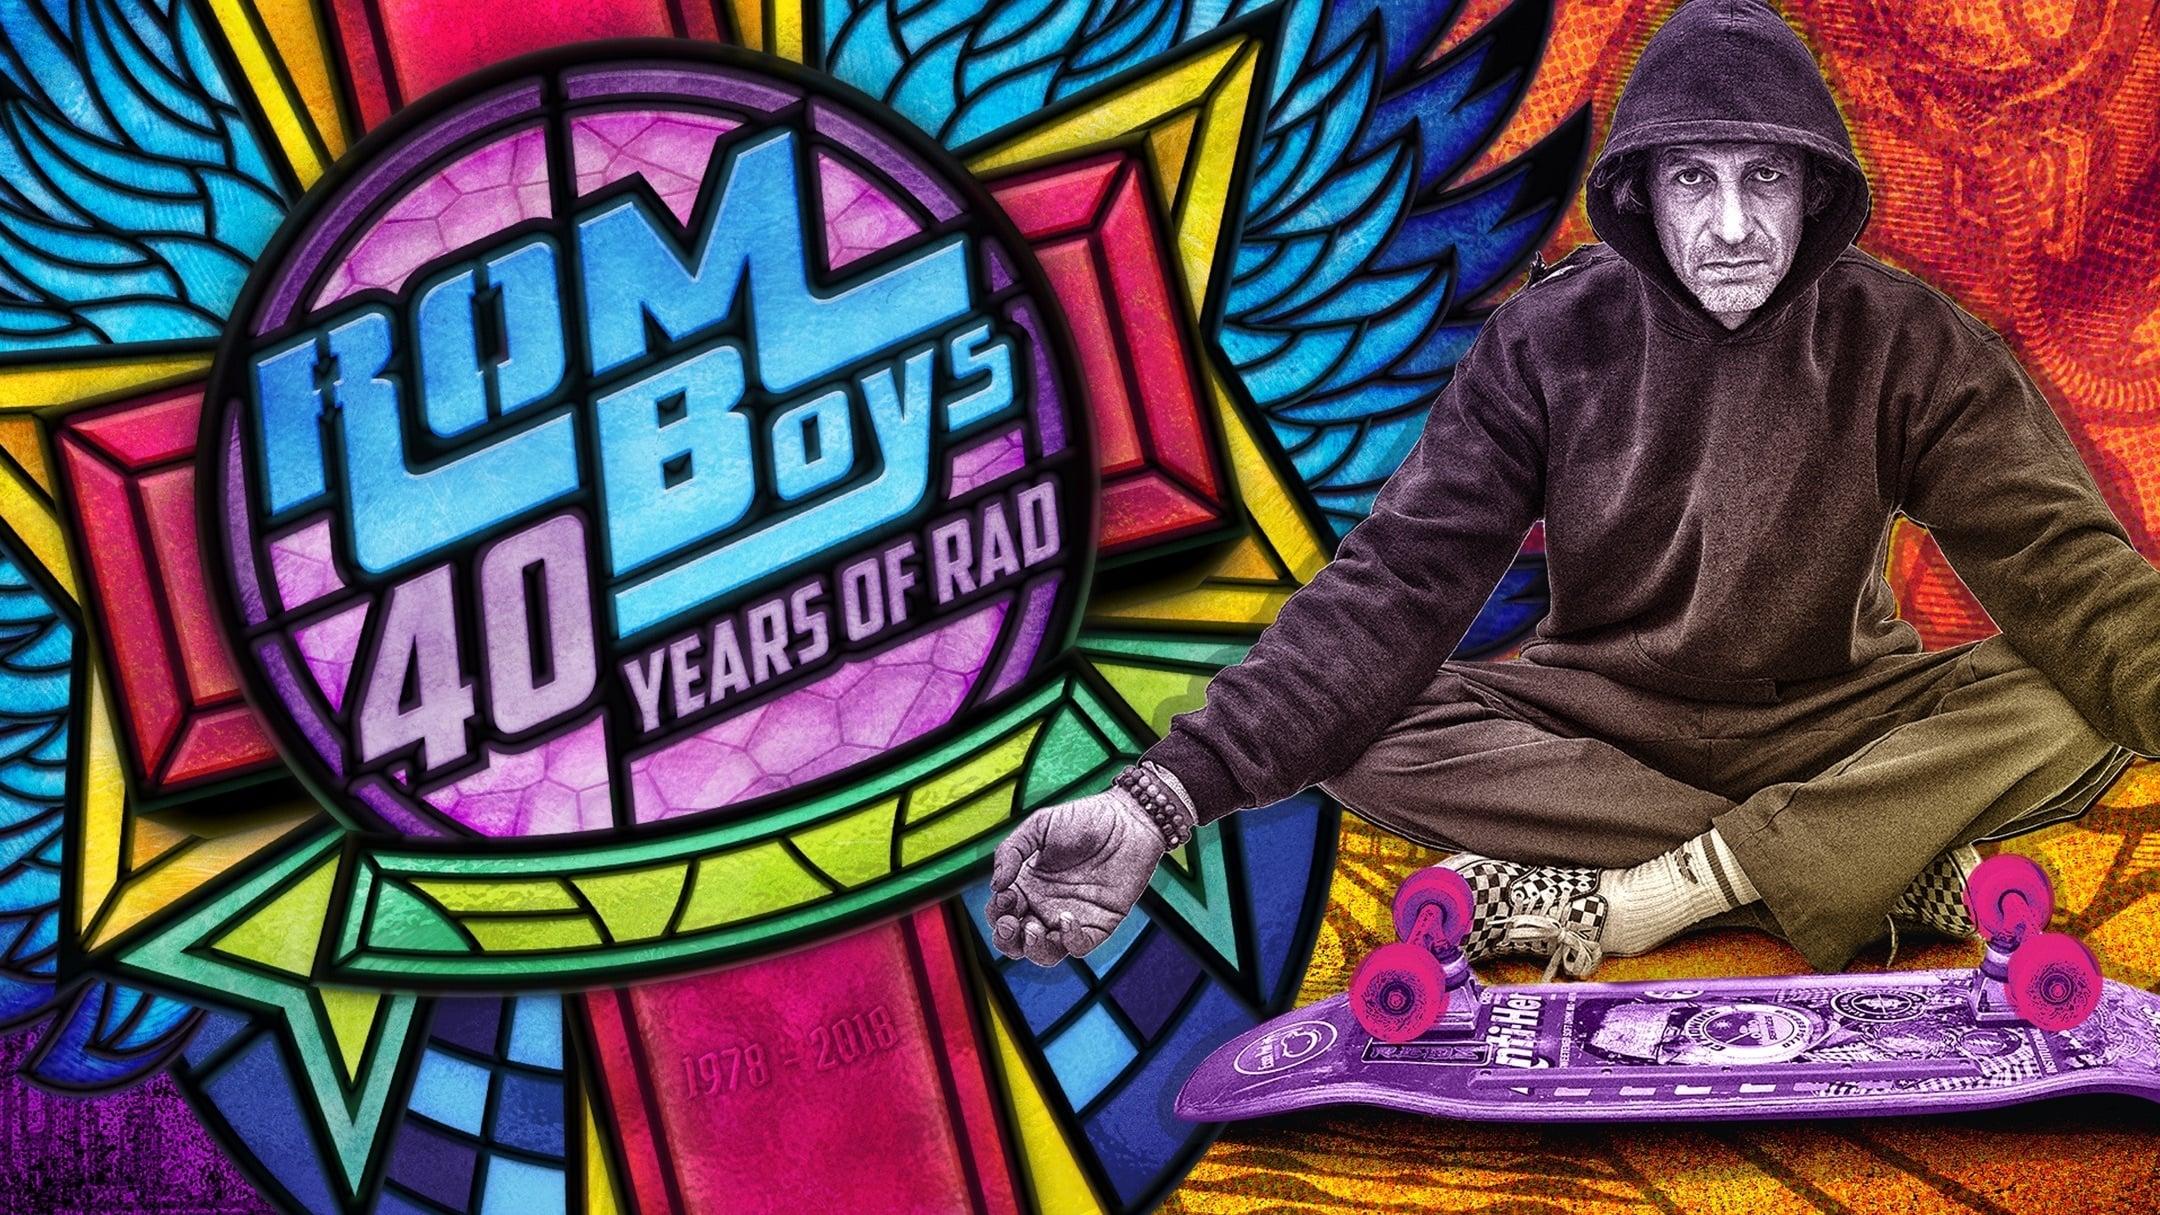 Rom Boys: 40 Years of Rad backdrop